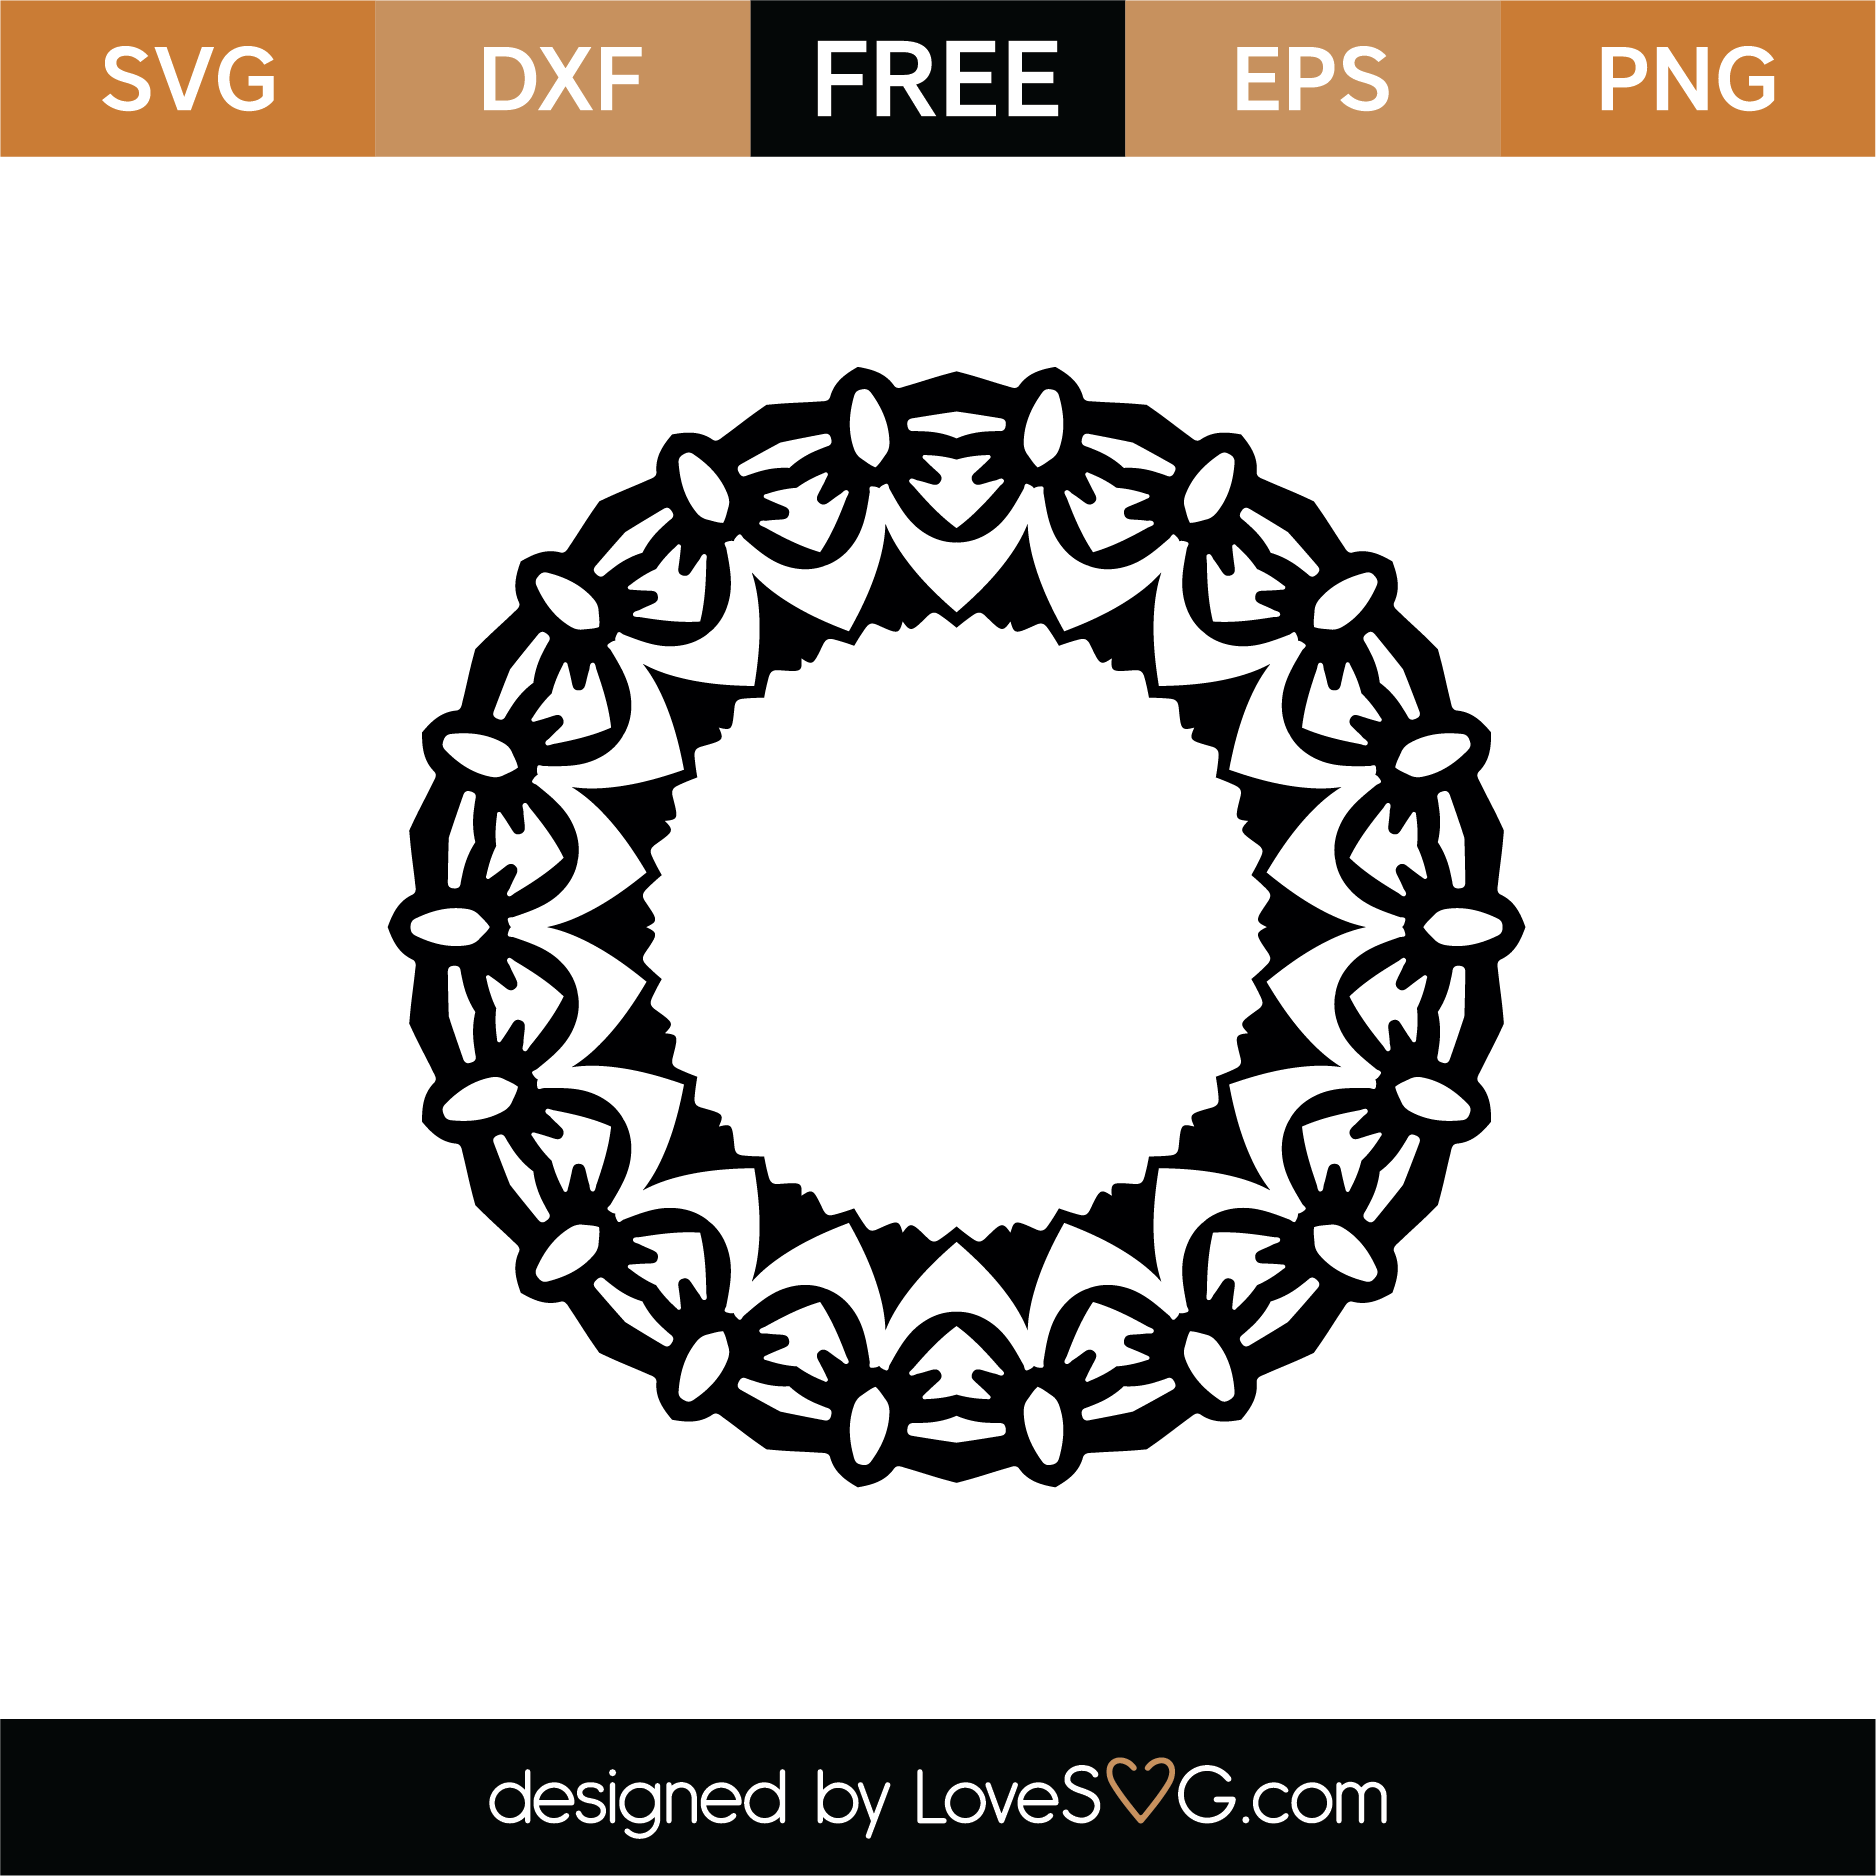 Download Monogram SVG Cut File - Lovesvg.com